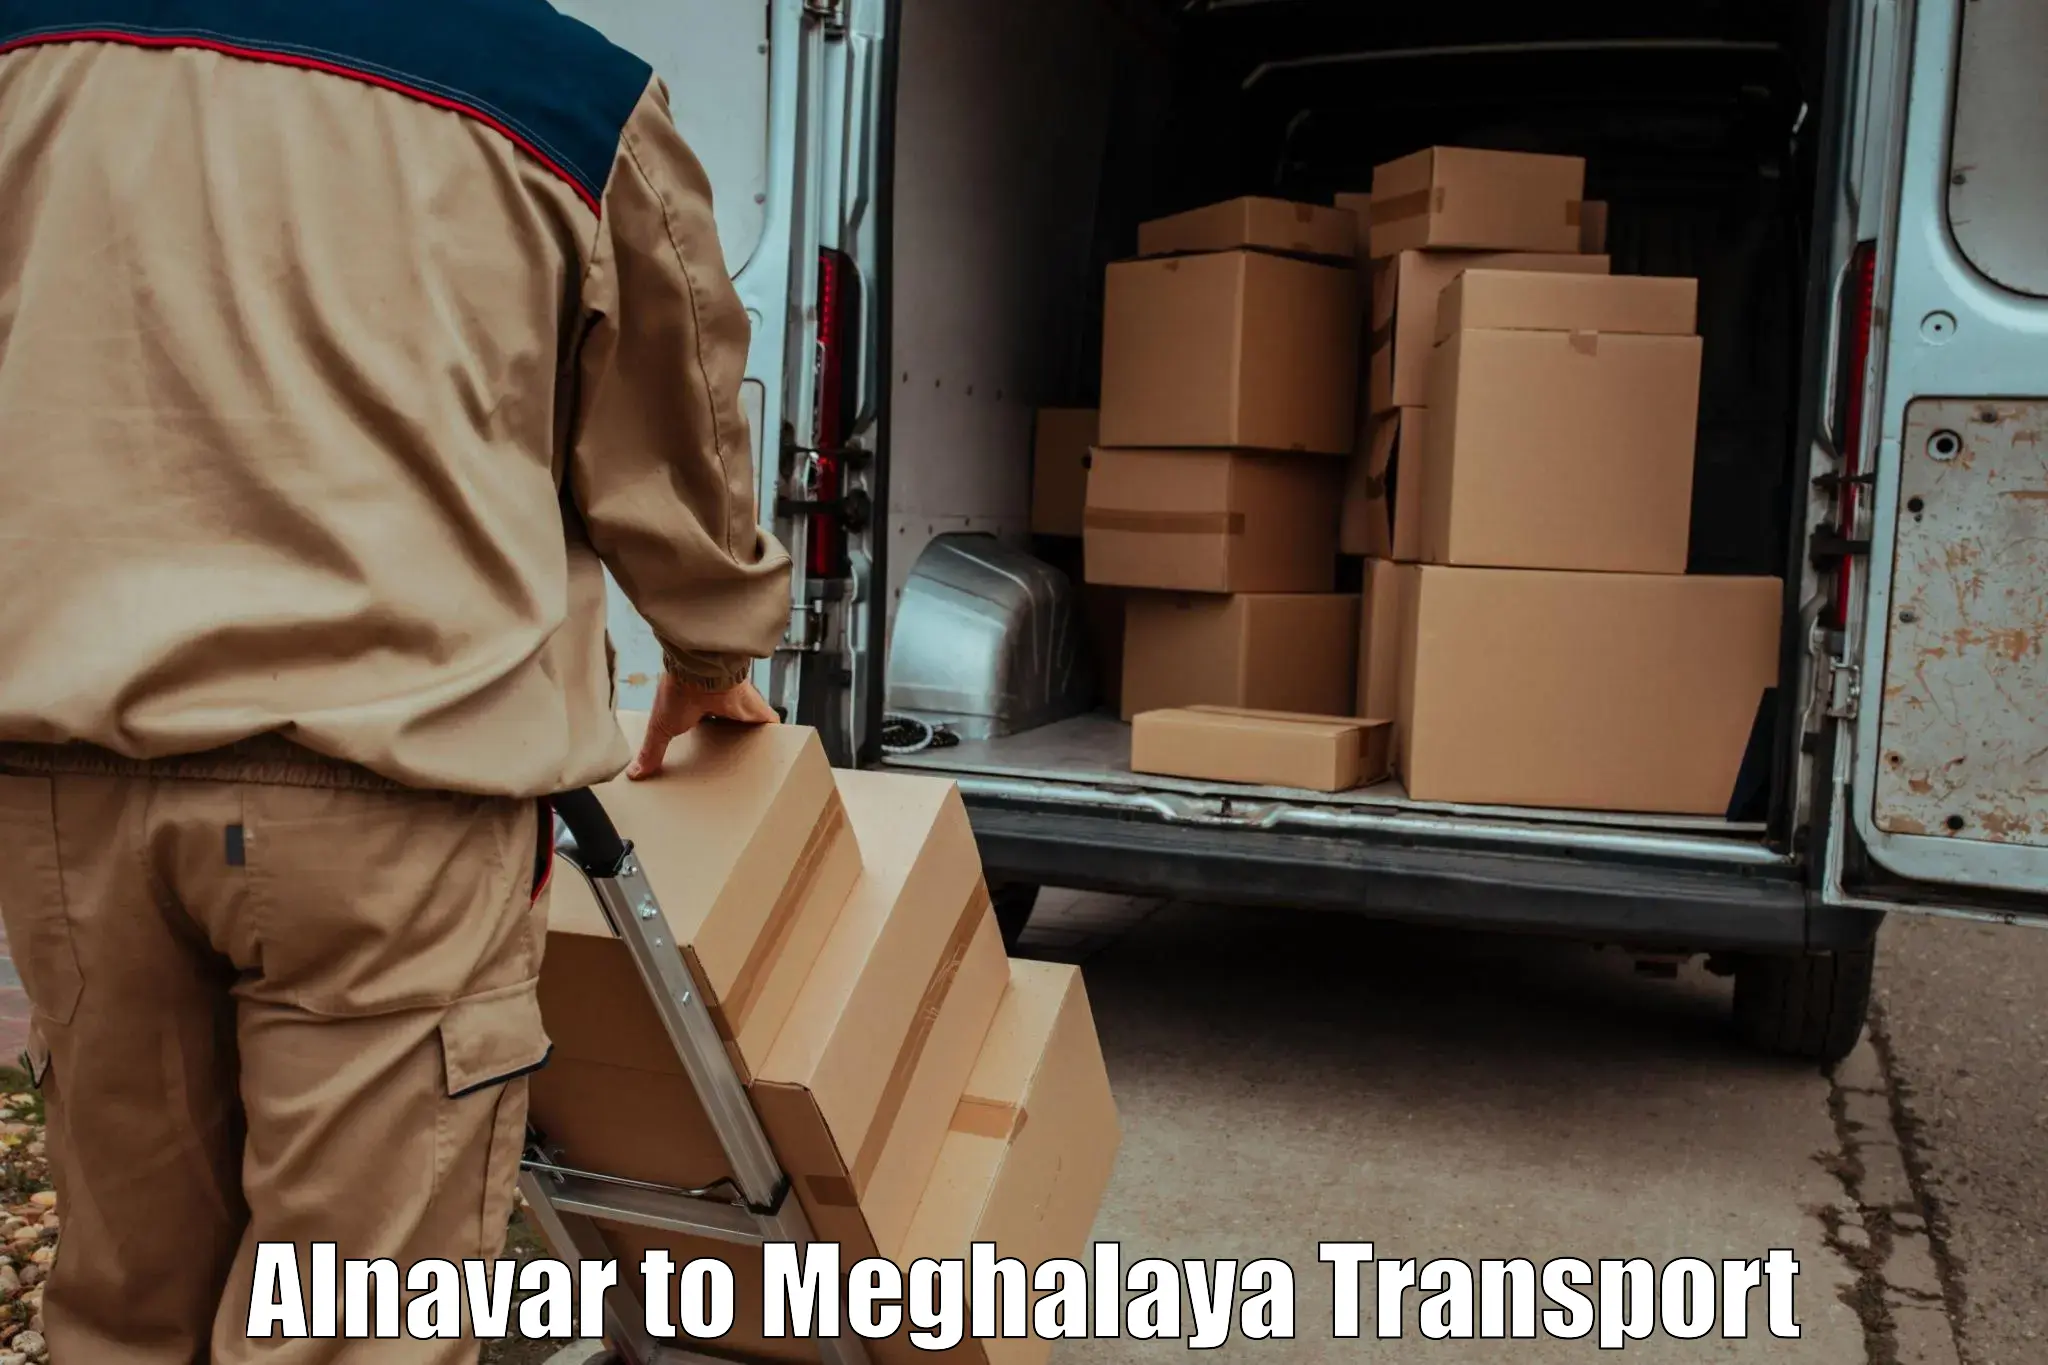 Transport services Alnavar to Dkhiah West